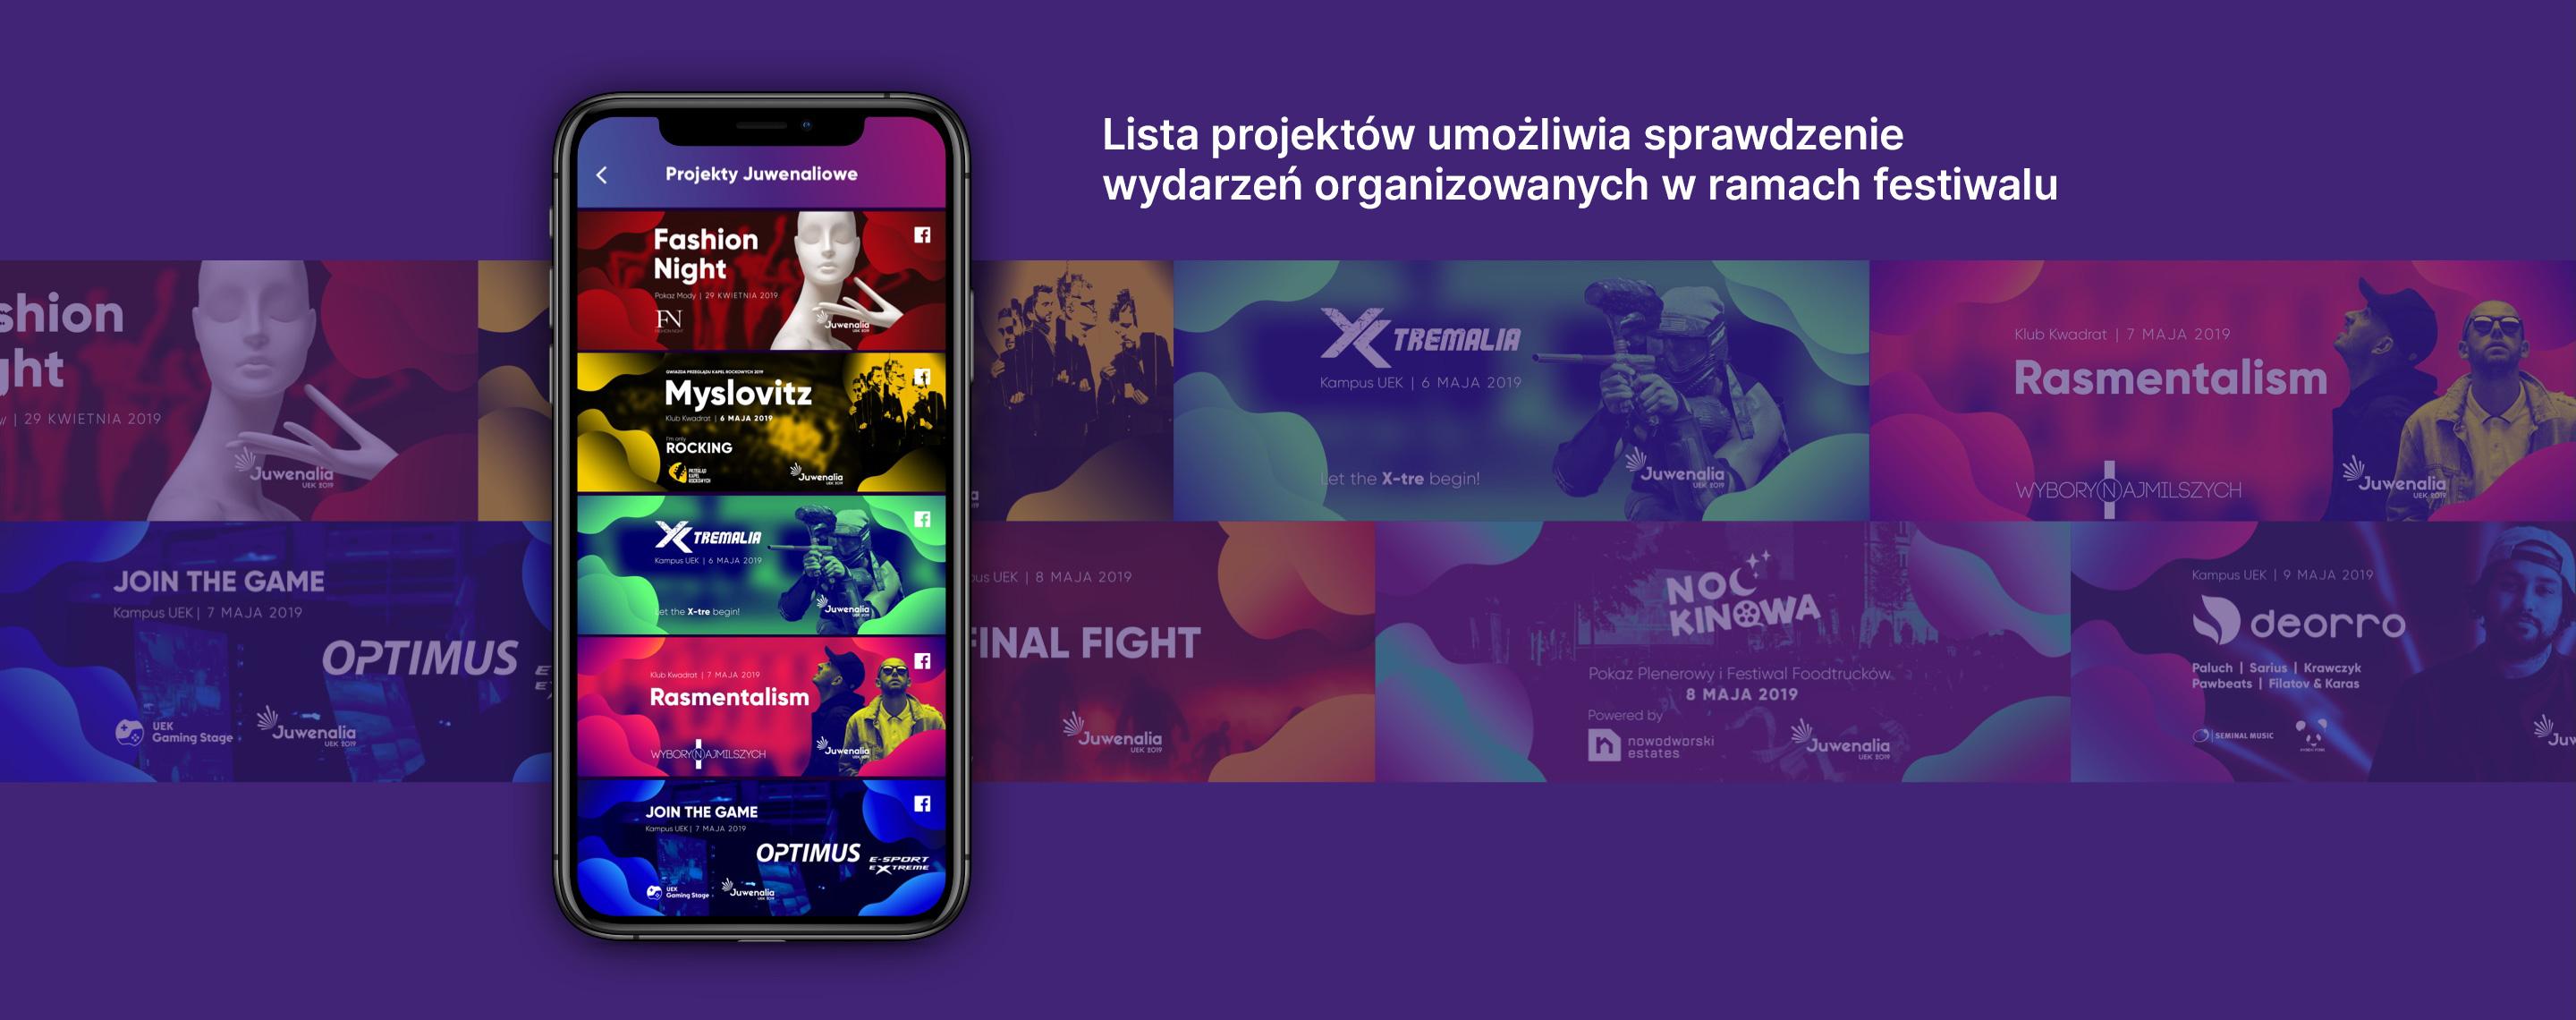 Funkcjonalności aplikacji Juwenalia UEK - listing wydarzeń festiwalowych